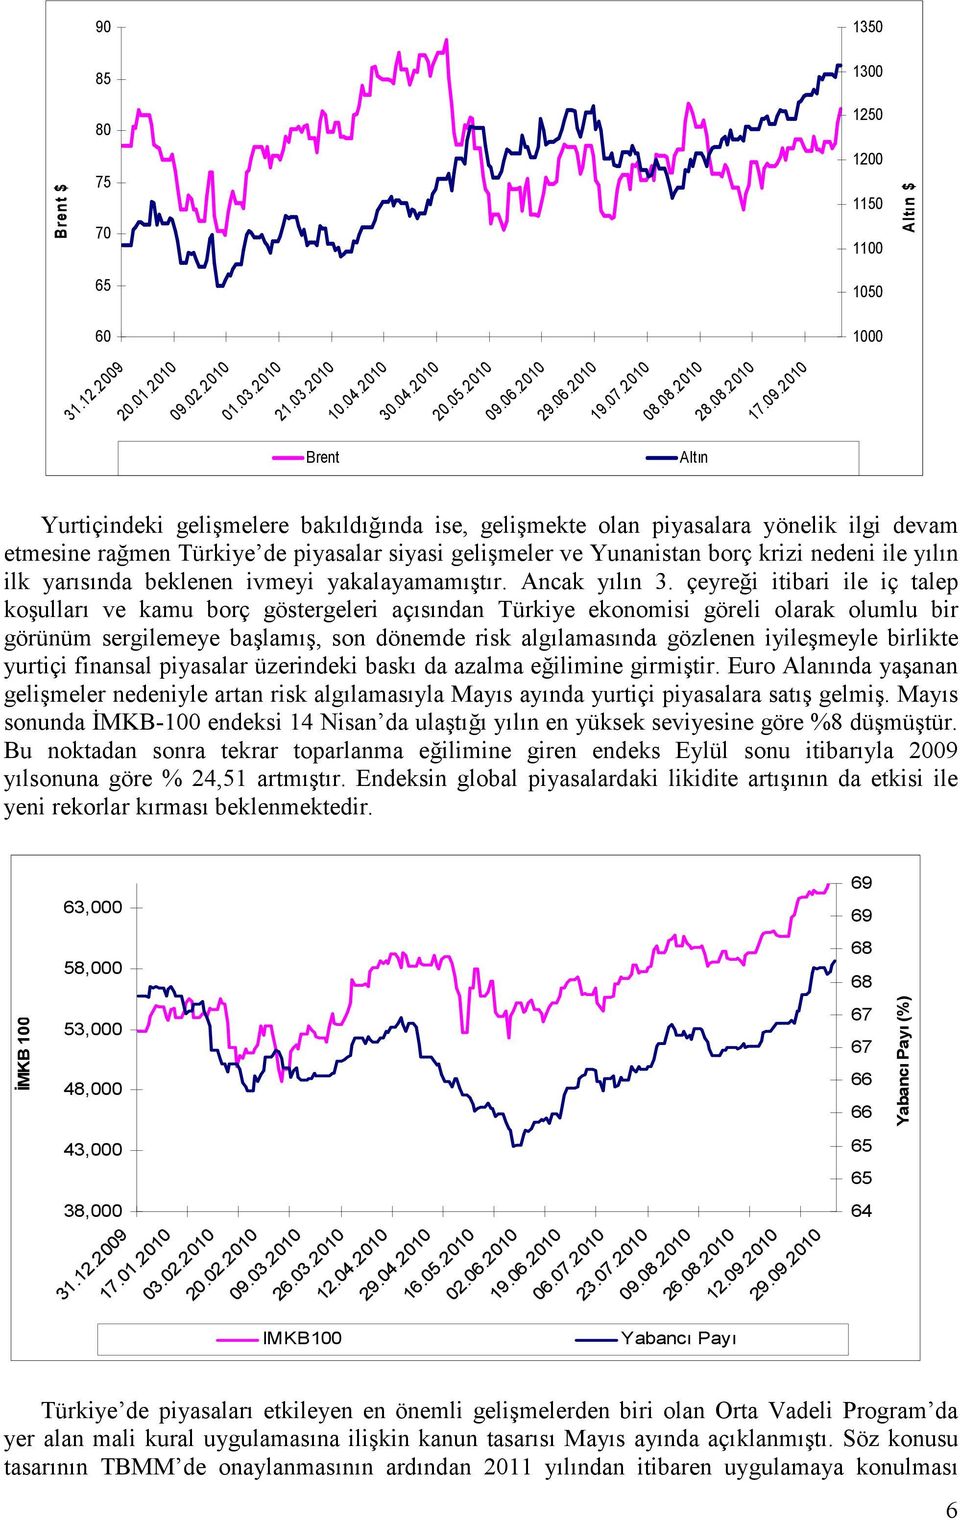 2010 Brent Altın Yurtiçindeki gelişmelere bakıldığında ise, gelişmekte olan piyasalara yönelik ilgi devam etmesine rağmen Türkiye de piyasalar siyasi gelişmeler ve Yunanistan borç krizi nedeni ile